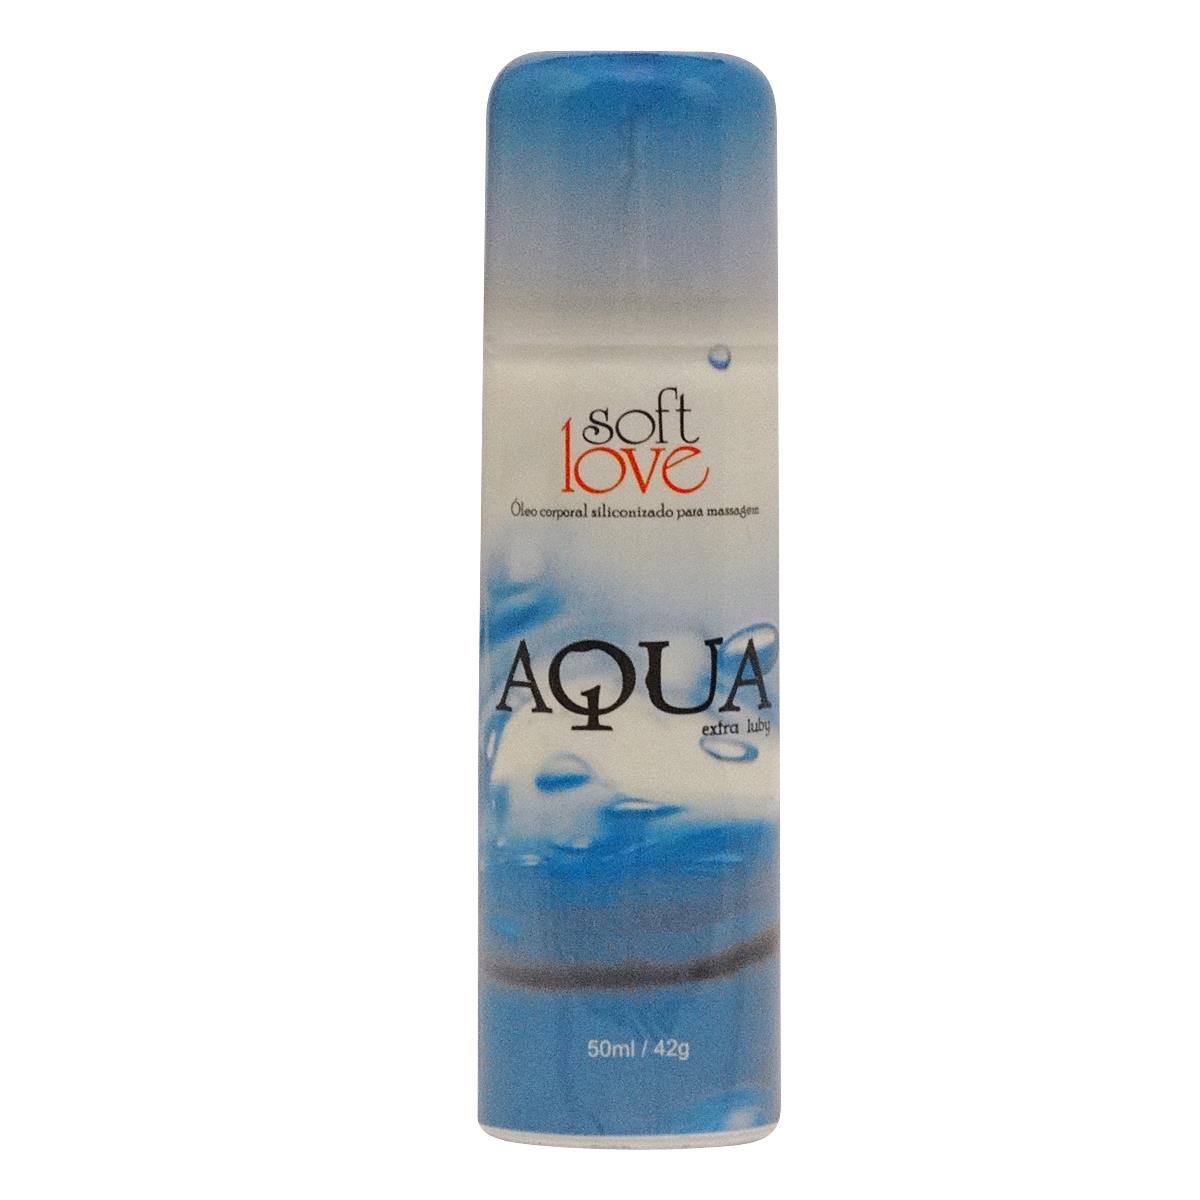 Aqua Extra Luby Óleo Corporal Siliconizado para Massagem 50ml/42g Soft Love